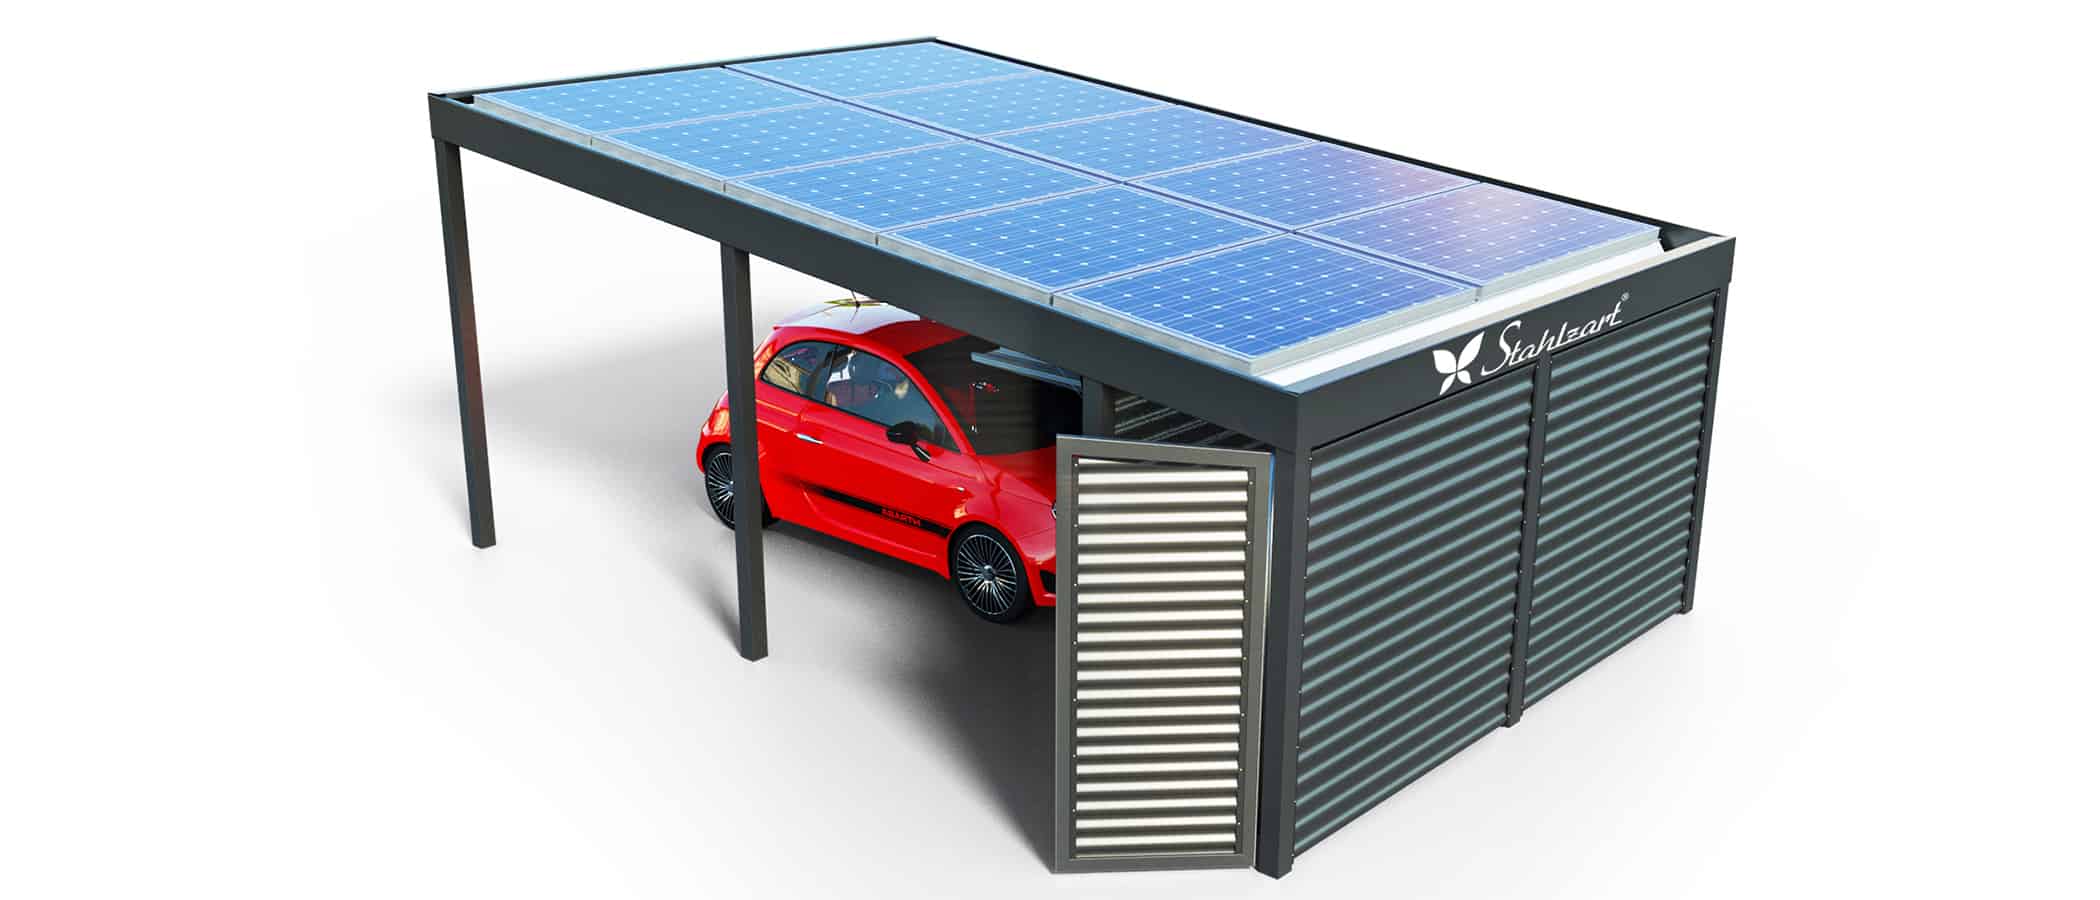 solar-carport-mit-pultdach-carports-solarcarport-pultdach-carportdach-design-strom-angebot-photovoltaikanlage-module-solardach-dachflaeche-metall-stahl-mit-geraeteraum-tuer-design-stahlzart